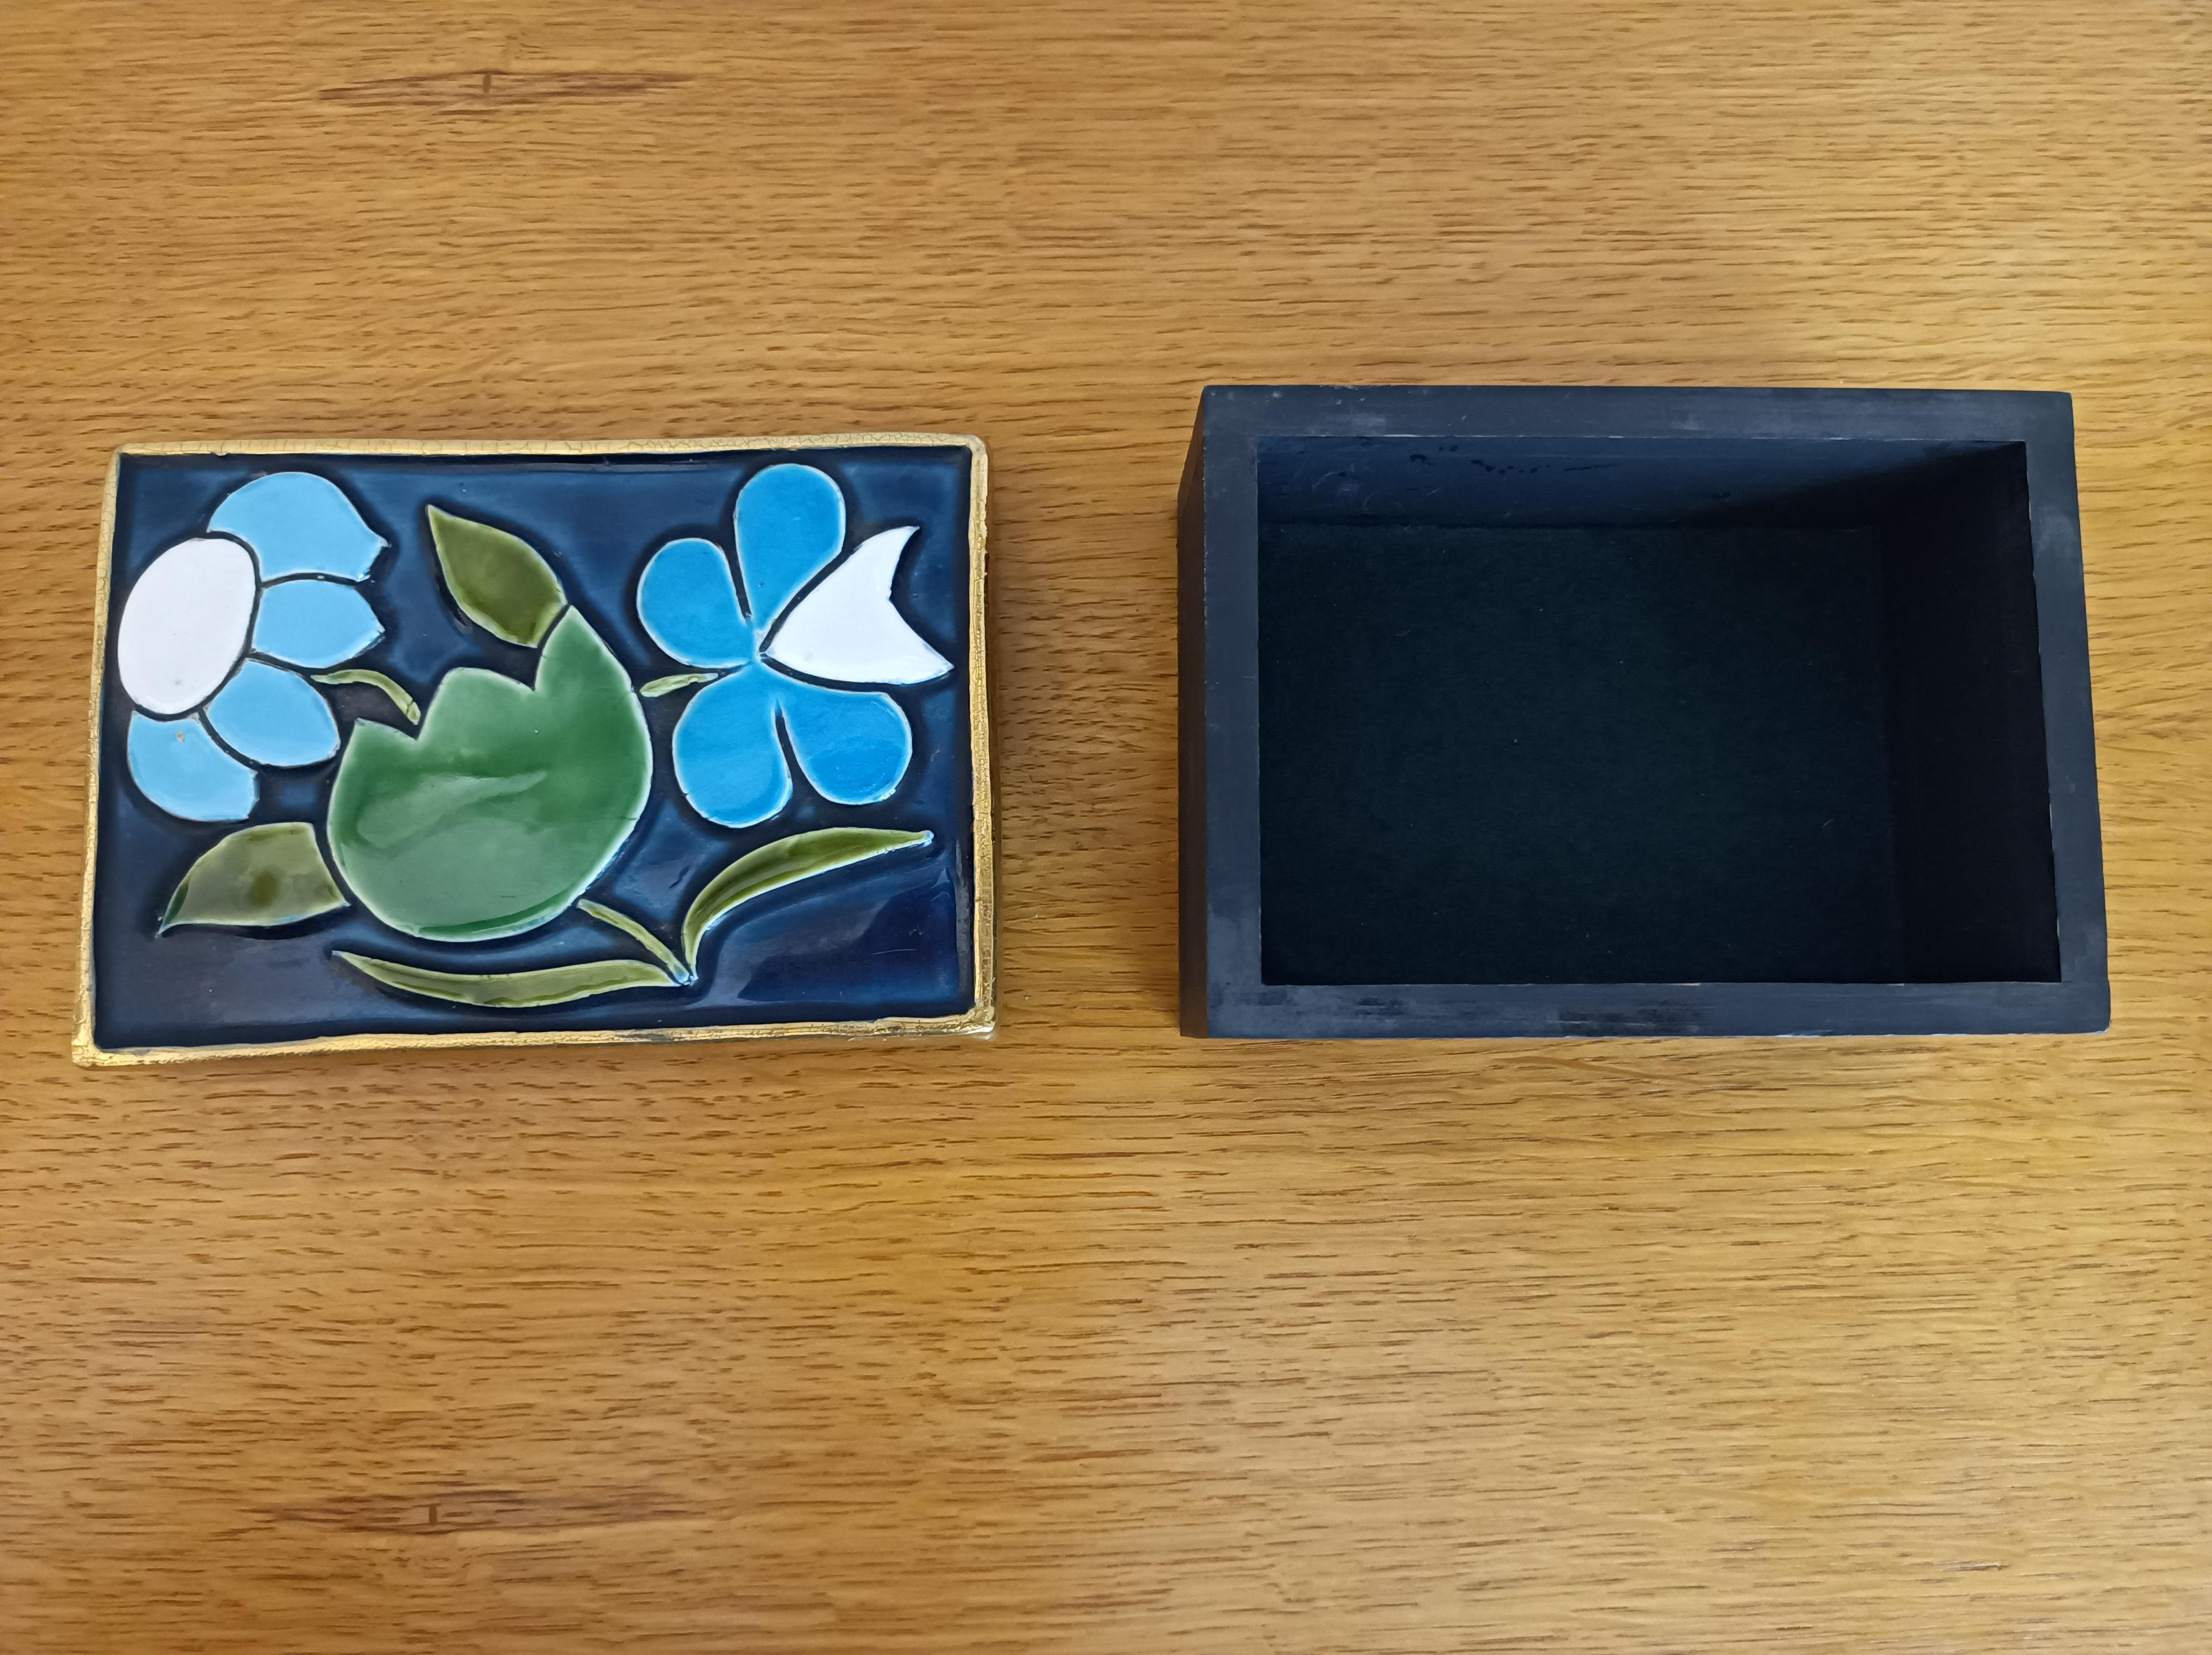 Un coffre rectangulaire avec trois fleurs émaillées en vert, bleu et blanc.
Cadre doré craquelé.
Base en bois avec feutre vert à l'arrière.
France,
Circa 1970

Dimensions : 
Hauteur ( max) : 6 cm / 2,36 inch 
Longueur : 10,5 cm / 14,13 inch